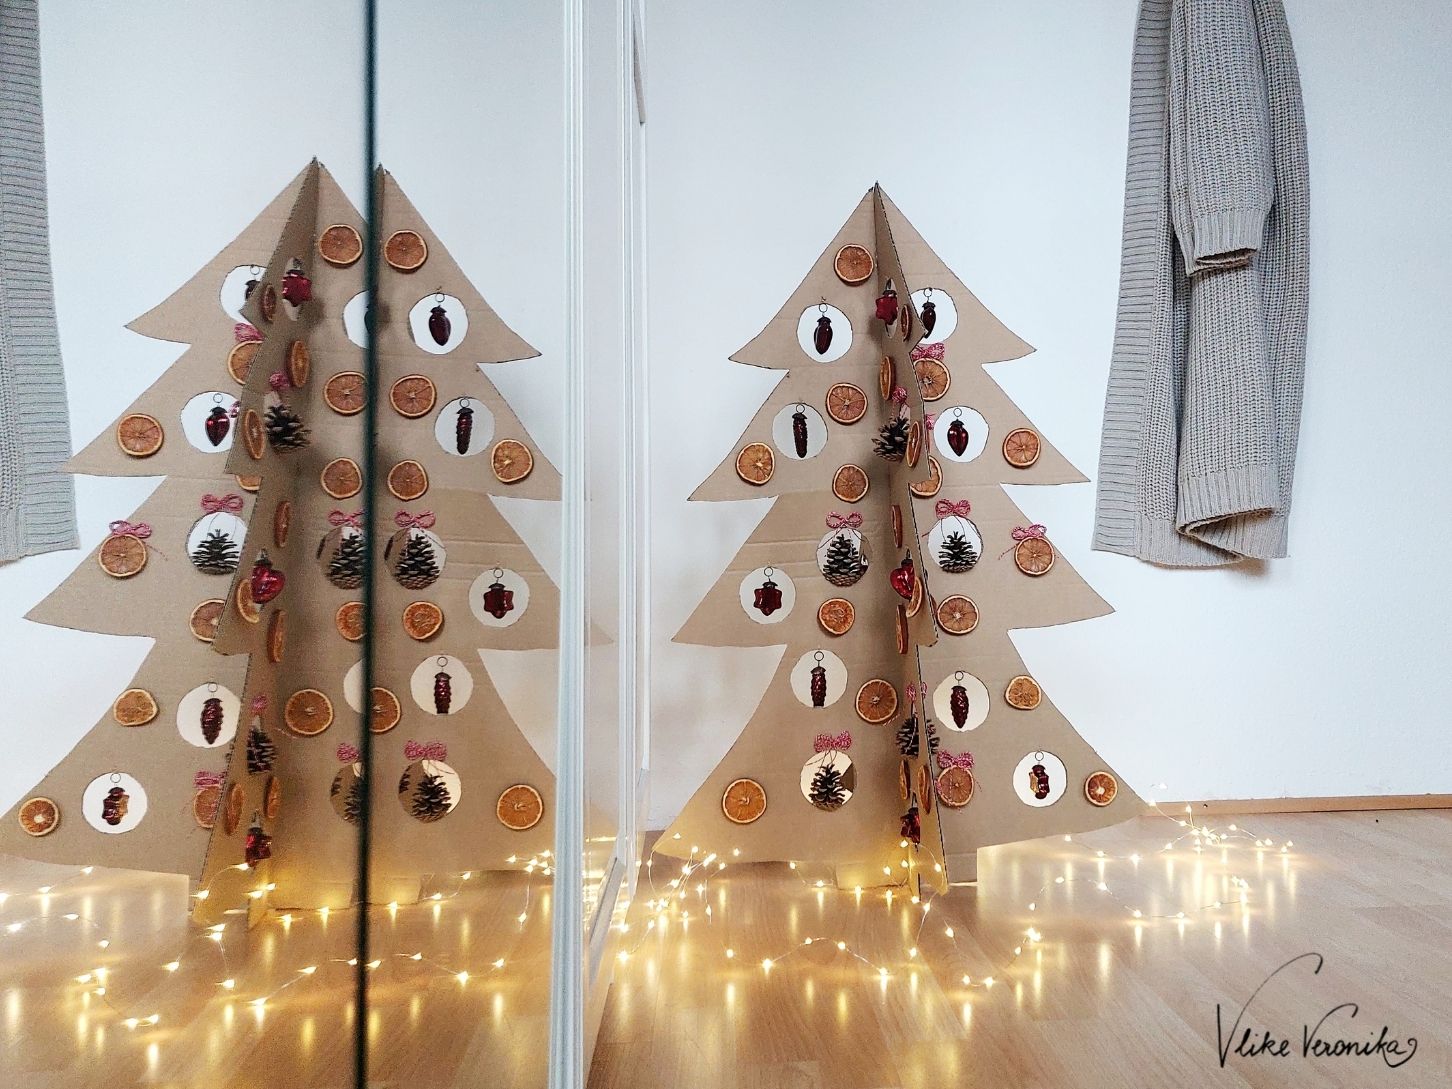 VlikeVeronika_Bastelanleitung für Upcycling Weihnachtsbaum aus Karton